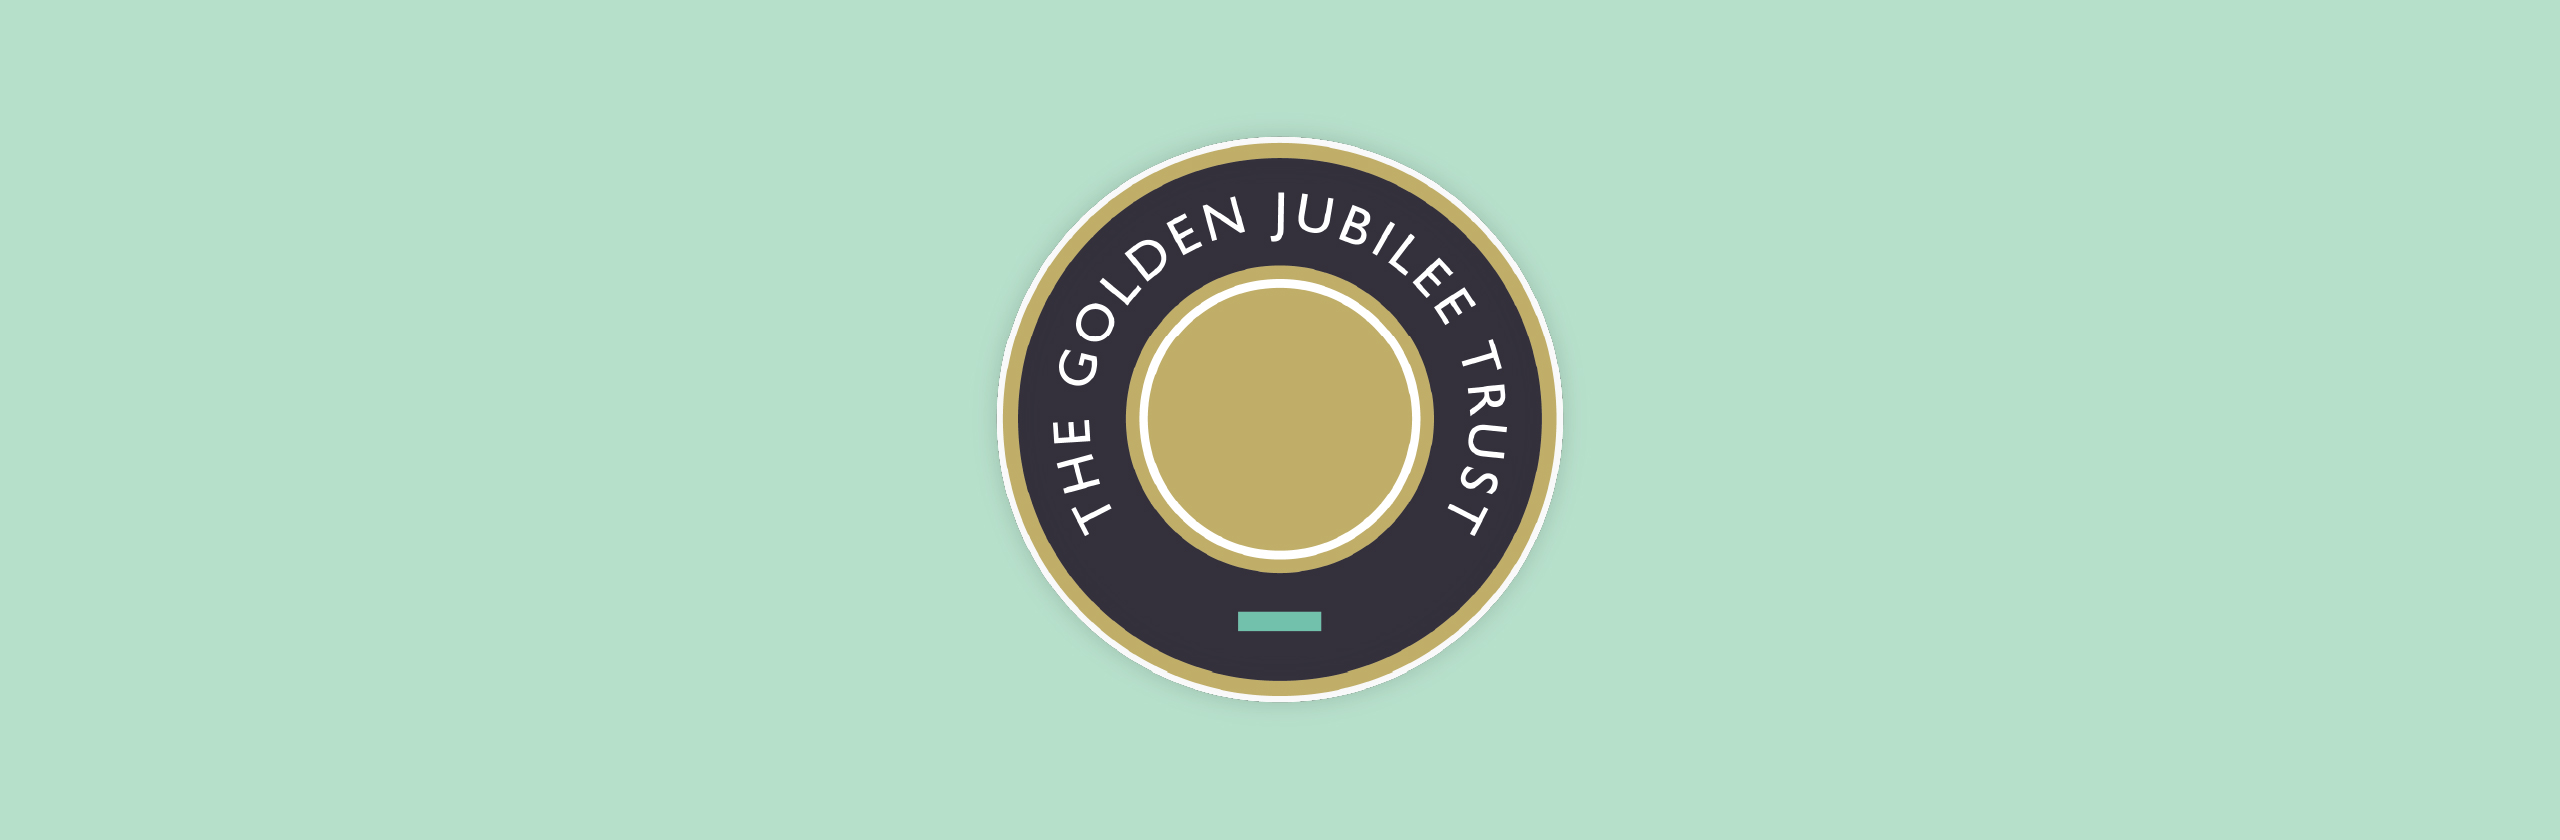 golden jubilee trust